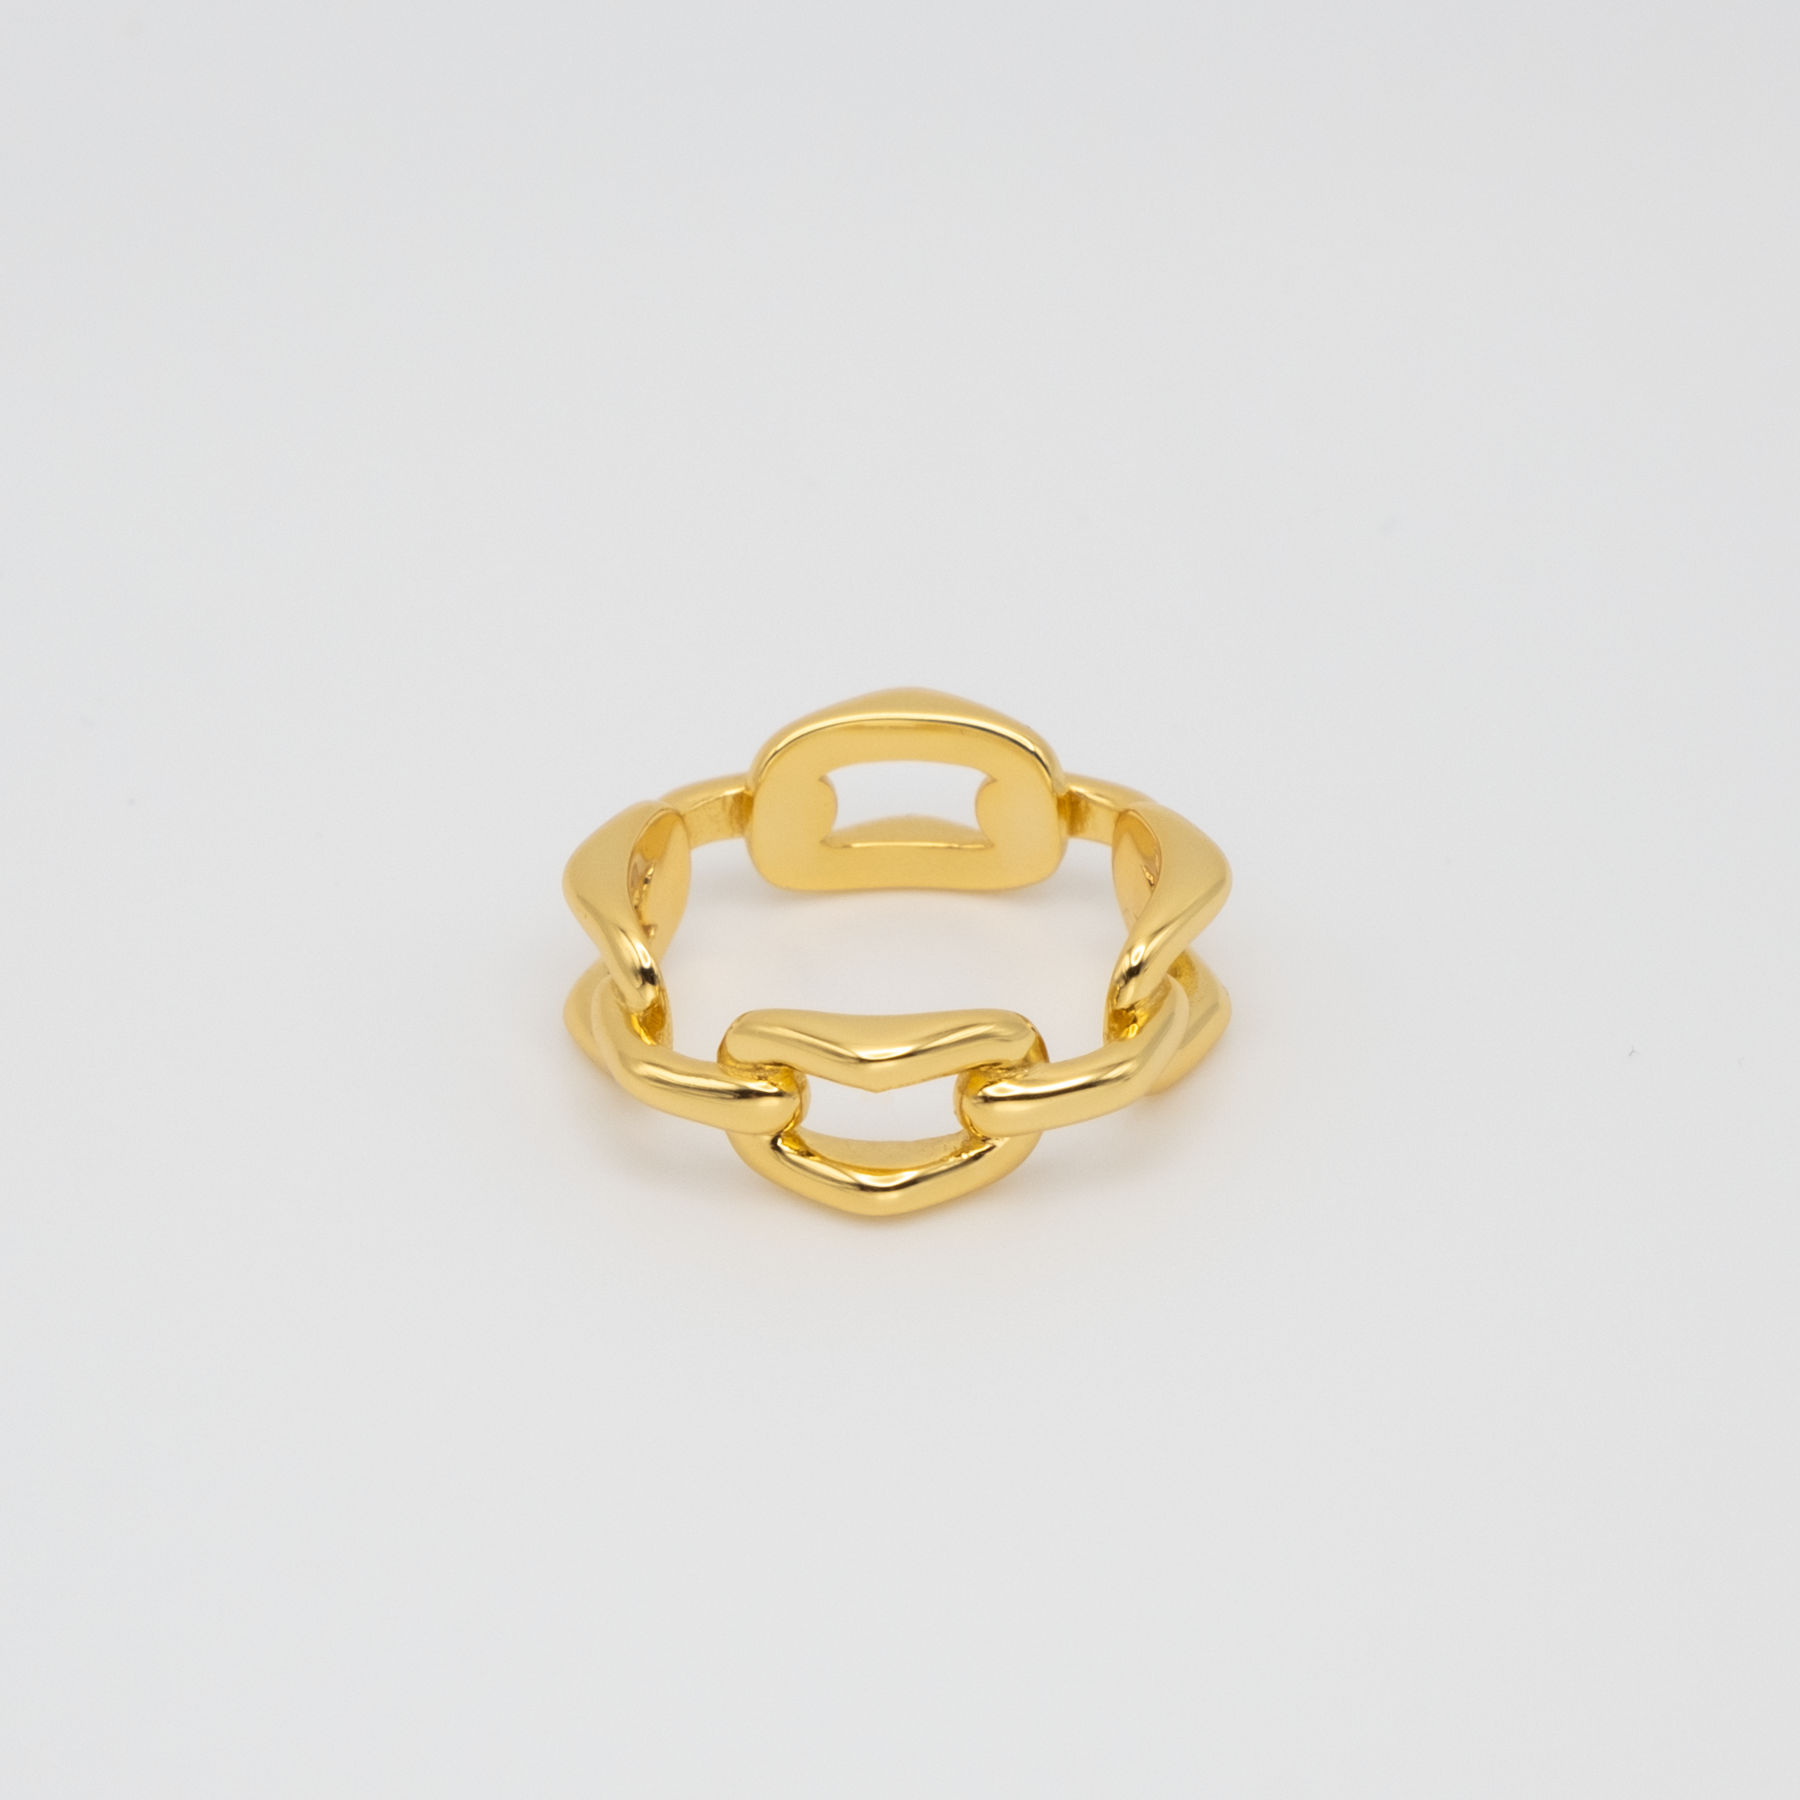 Splendor Gold Ring – Avaria